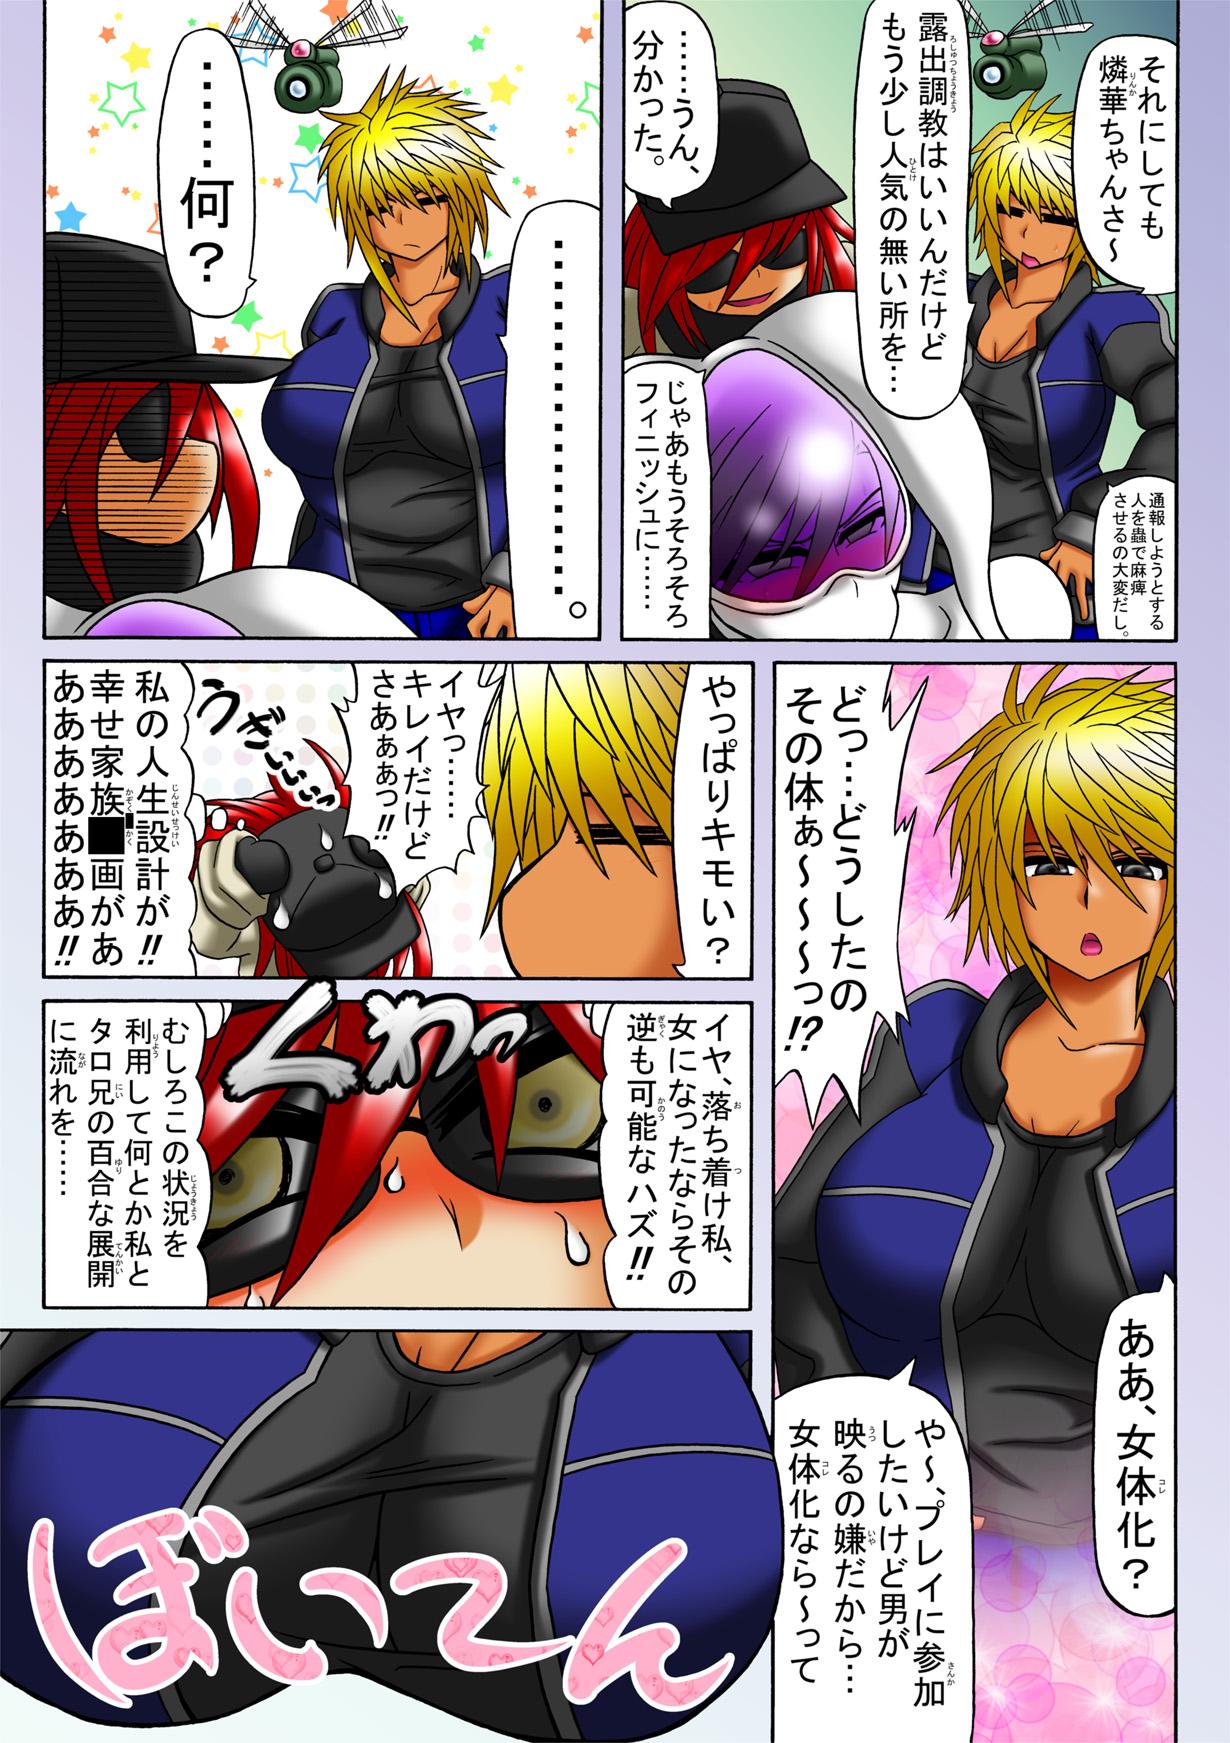 Gordita Ama no Ichiyo 5 Master - Page 9